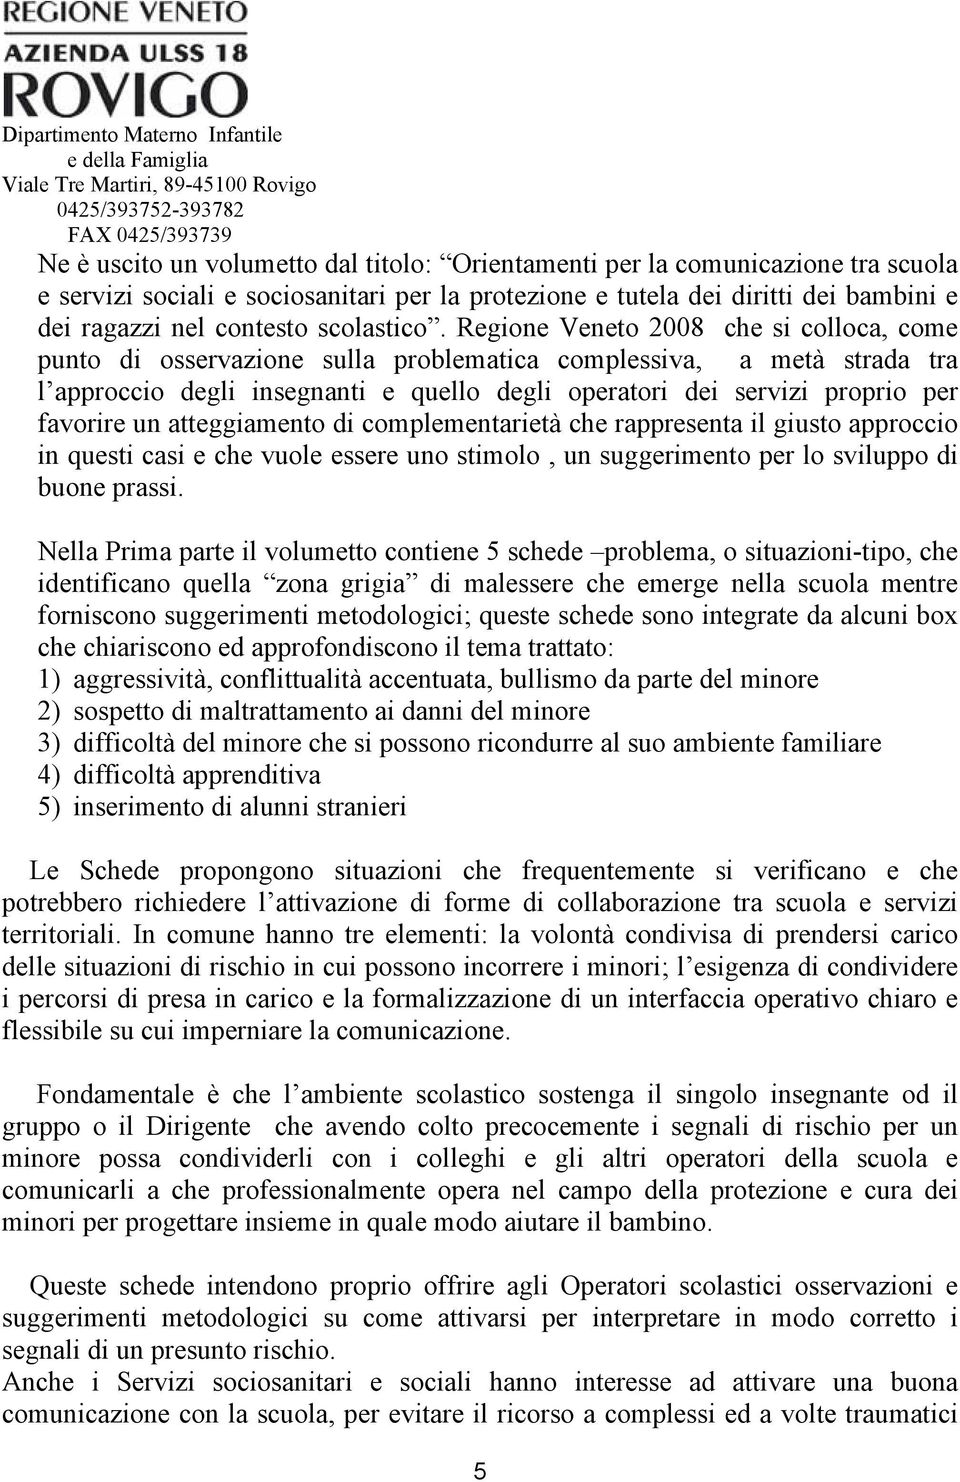 Regione Veneto 2008 che si colloca, come punto di osservazione sulla problematica complessiva, a metà strada tra l approccio degli insegnanti e quello degli operatori dei servizi proprio per favorire